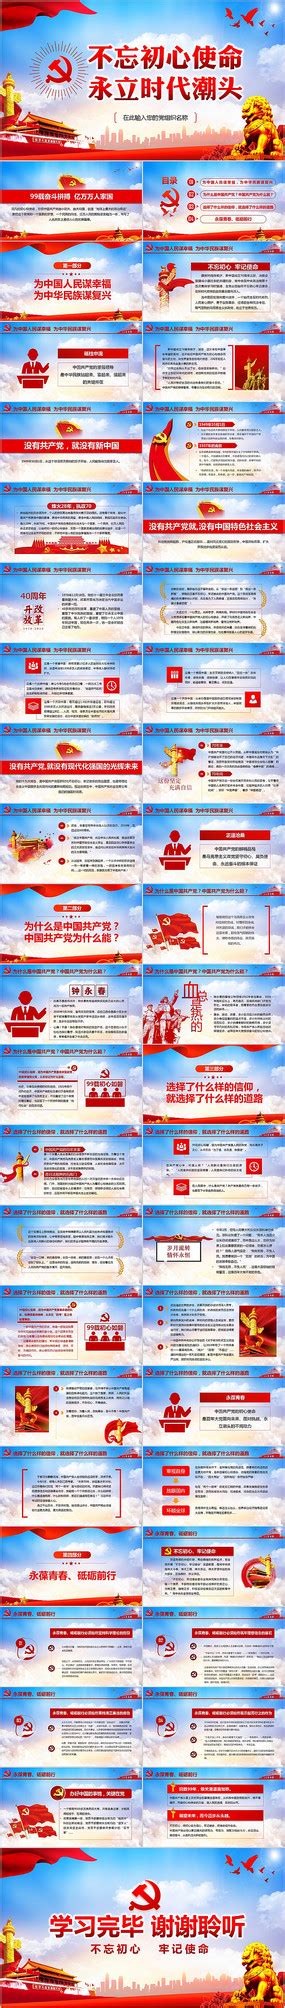 奋斗目标图片_奋斗目标设计素材_红动中国